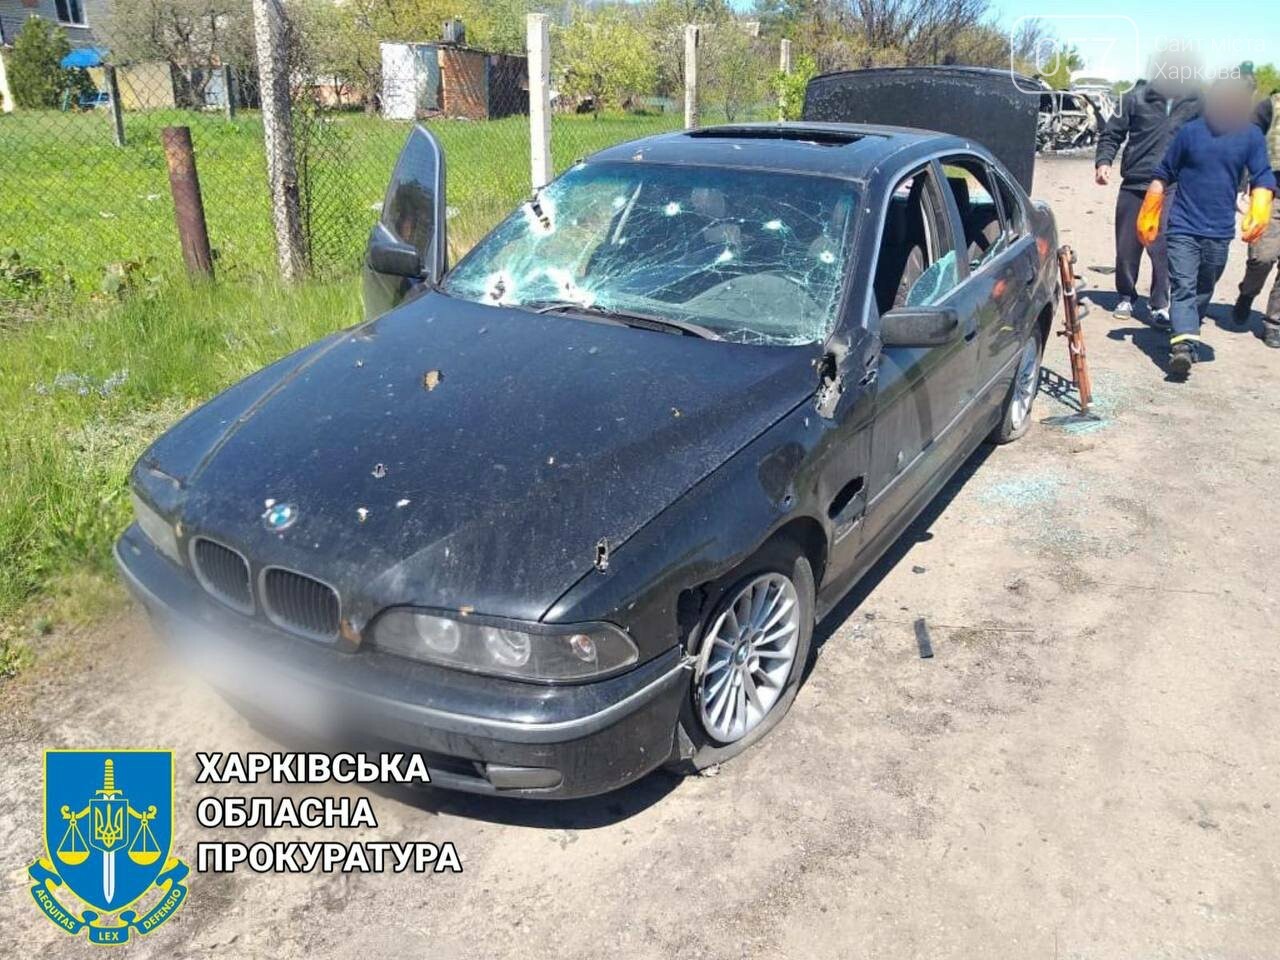 На Харківщині окупанти відкрили вогонь по колоні автомобілів з мирними мешканцями: загинули чотири людини, - ФОТО